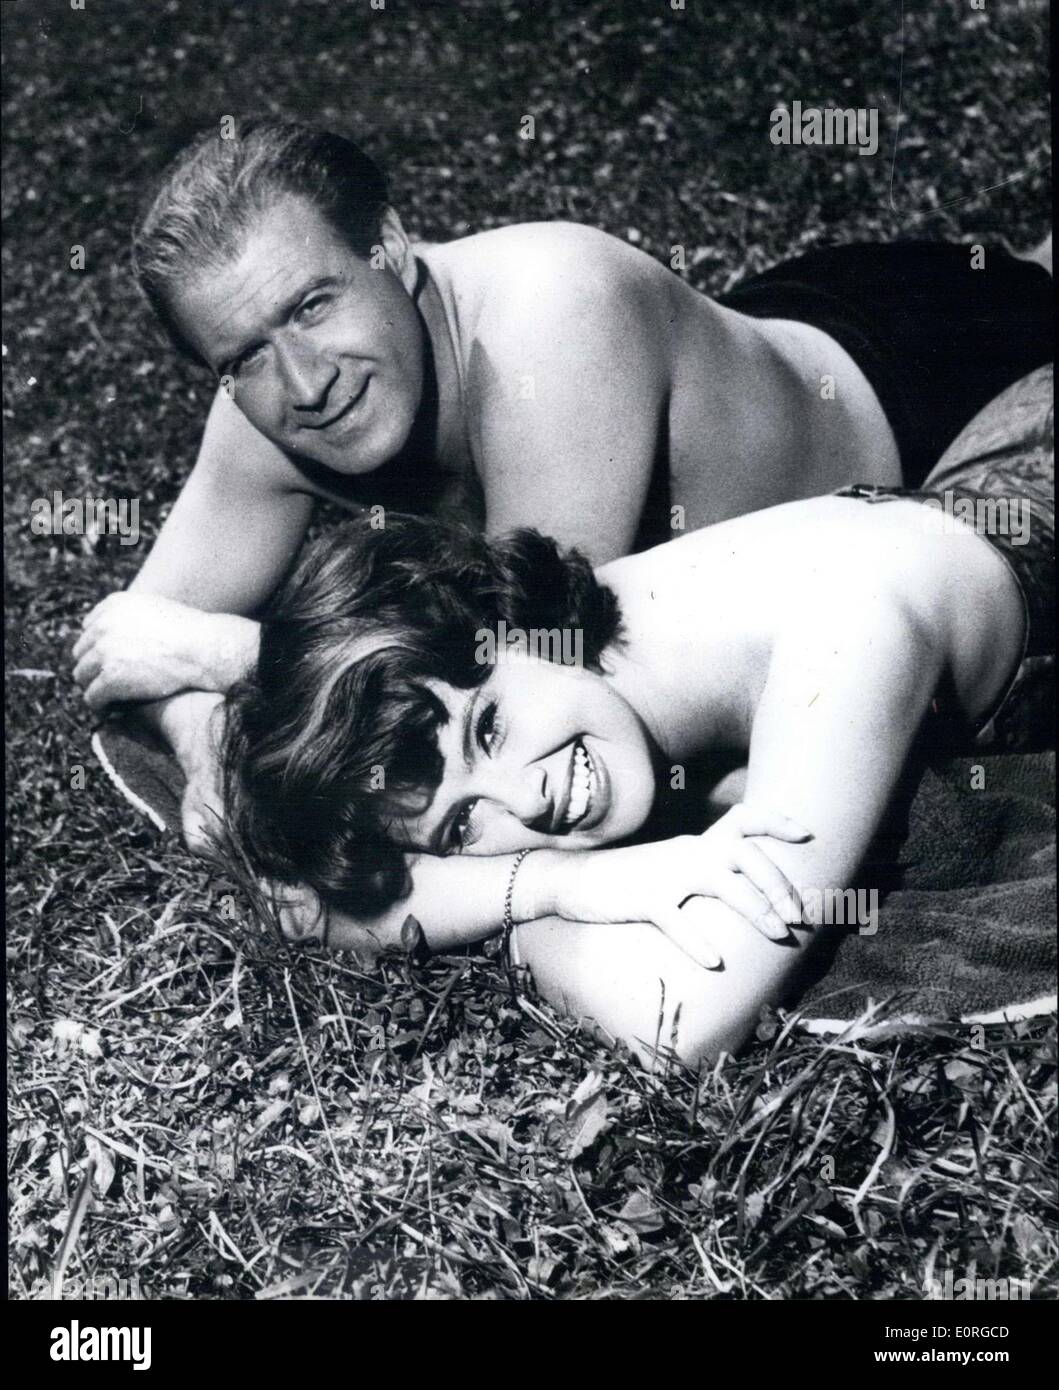 Lug. 06, 1959 - presso il Danubio blu Uschi Siebert (USCHI SIEBERT) e Hans Joachim Kulenkampff (Hans Joachim KULENKAMPFF) sono rilassanti dopo una giornata di duro lavoro. Kulenkampff, chiamato ''Kuli'' televisione quiz master numero 1 in Germania e il suo assistente ''Uschi'' che si sono aggiudicati il ''golden schermo televisivo 1959'' il 3 luglio sono ora starring nel Wiener Mundus/ Prisma film colore ''sempre le ragazze'' che ora sta per essere finito in Vienna. Foto Stock